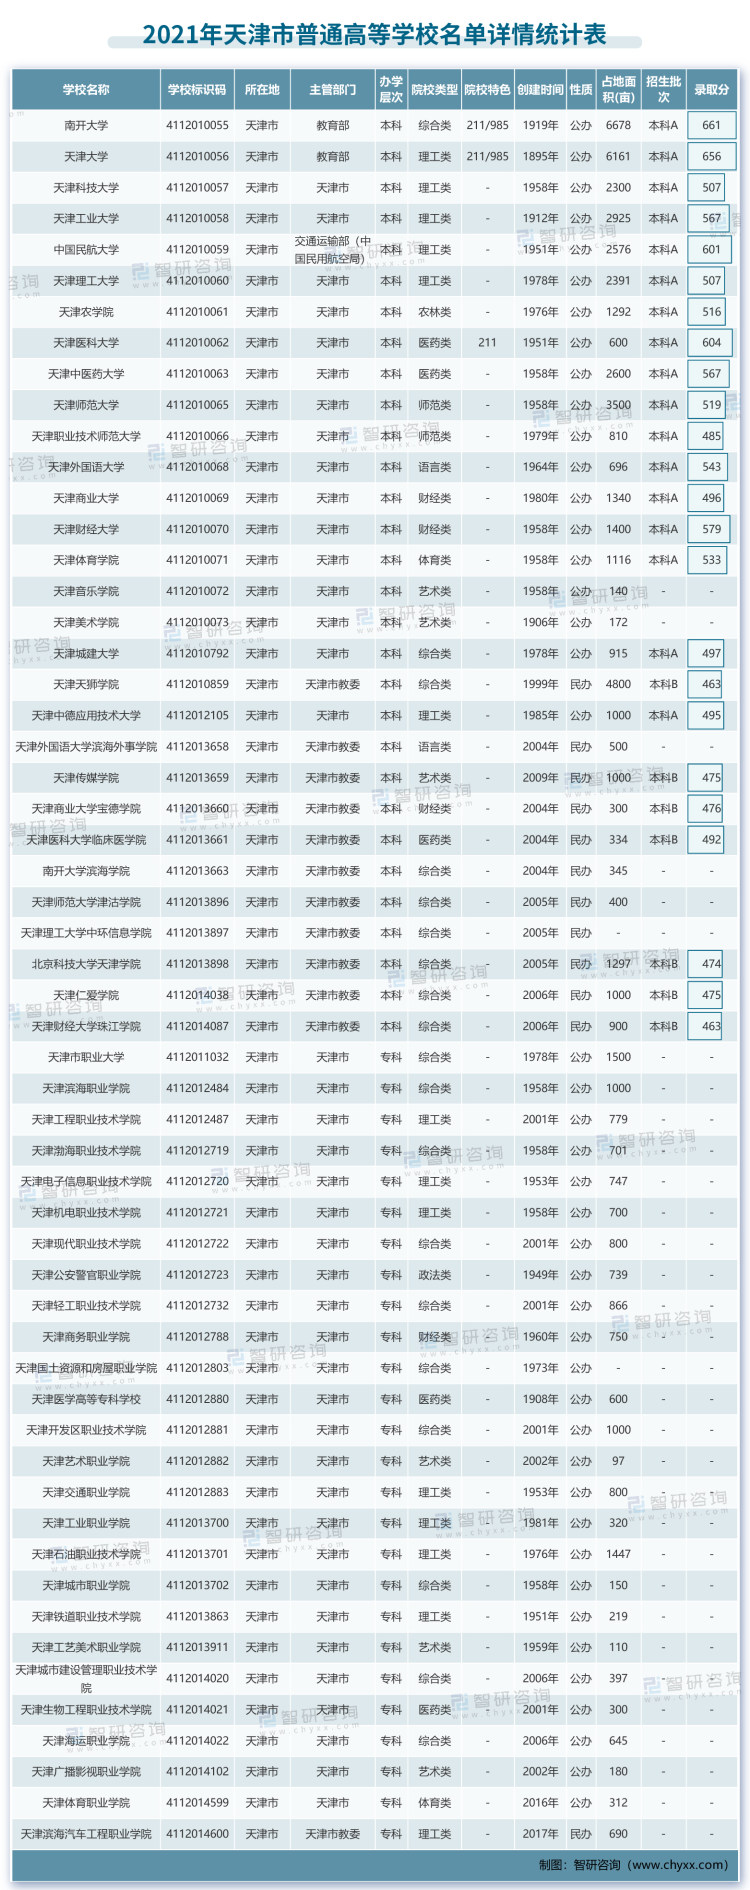 2021年高校名单-天津_画板 1